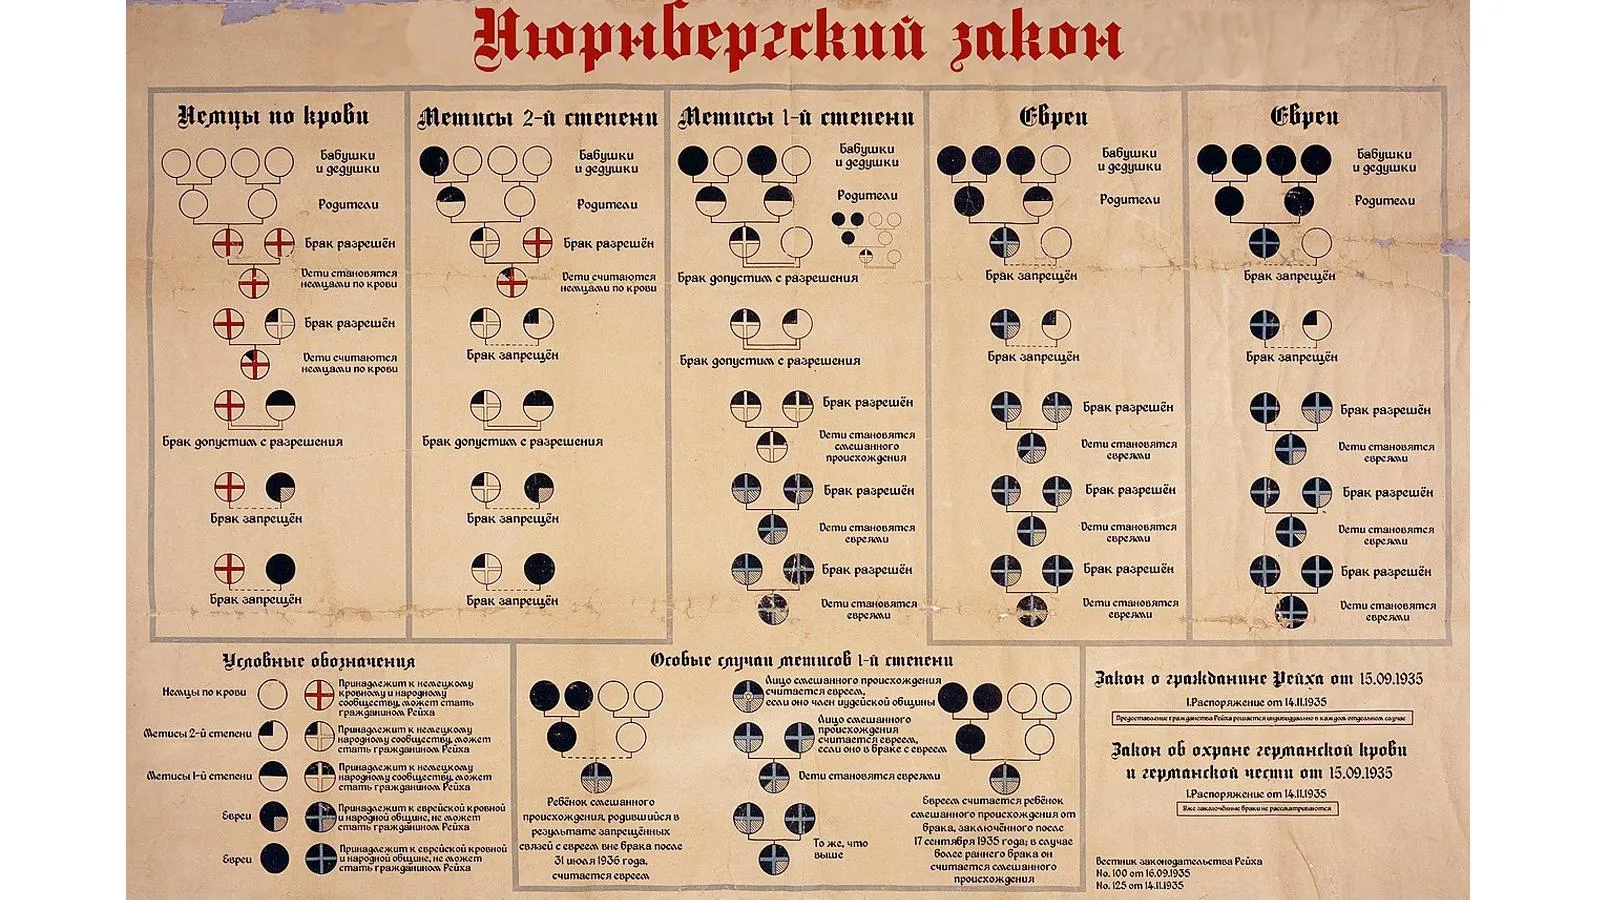 Диаграмма 1935 года, объясняющая Нюрнбергские расовые законы, определяющие принадлежность к арийцам, евреям или мишлингам (людям со смешанной кровью)